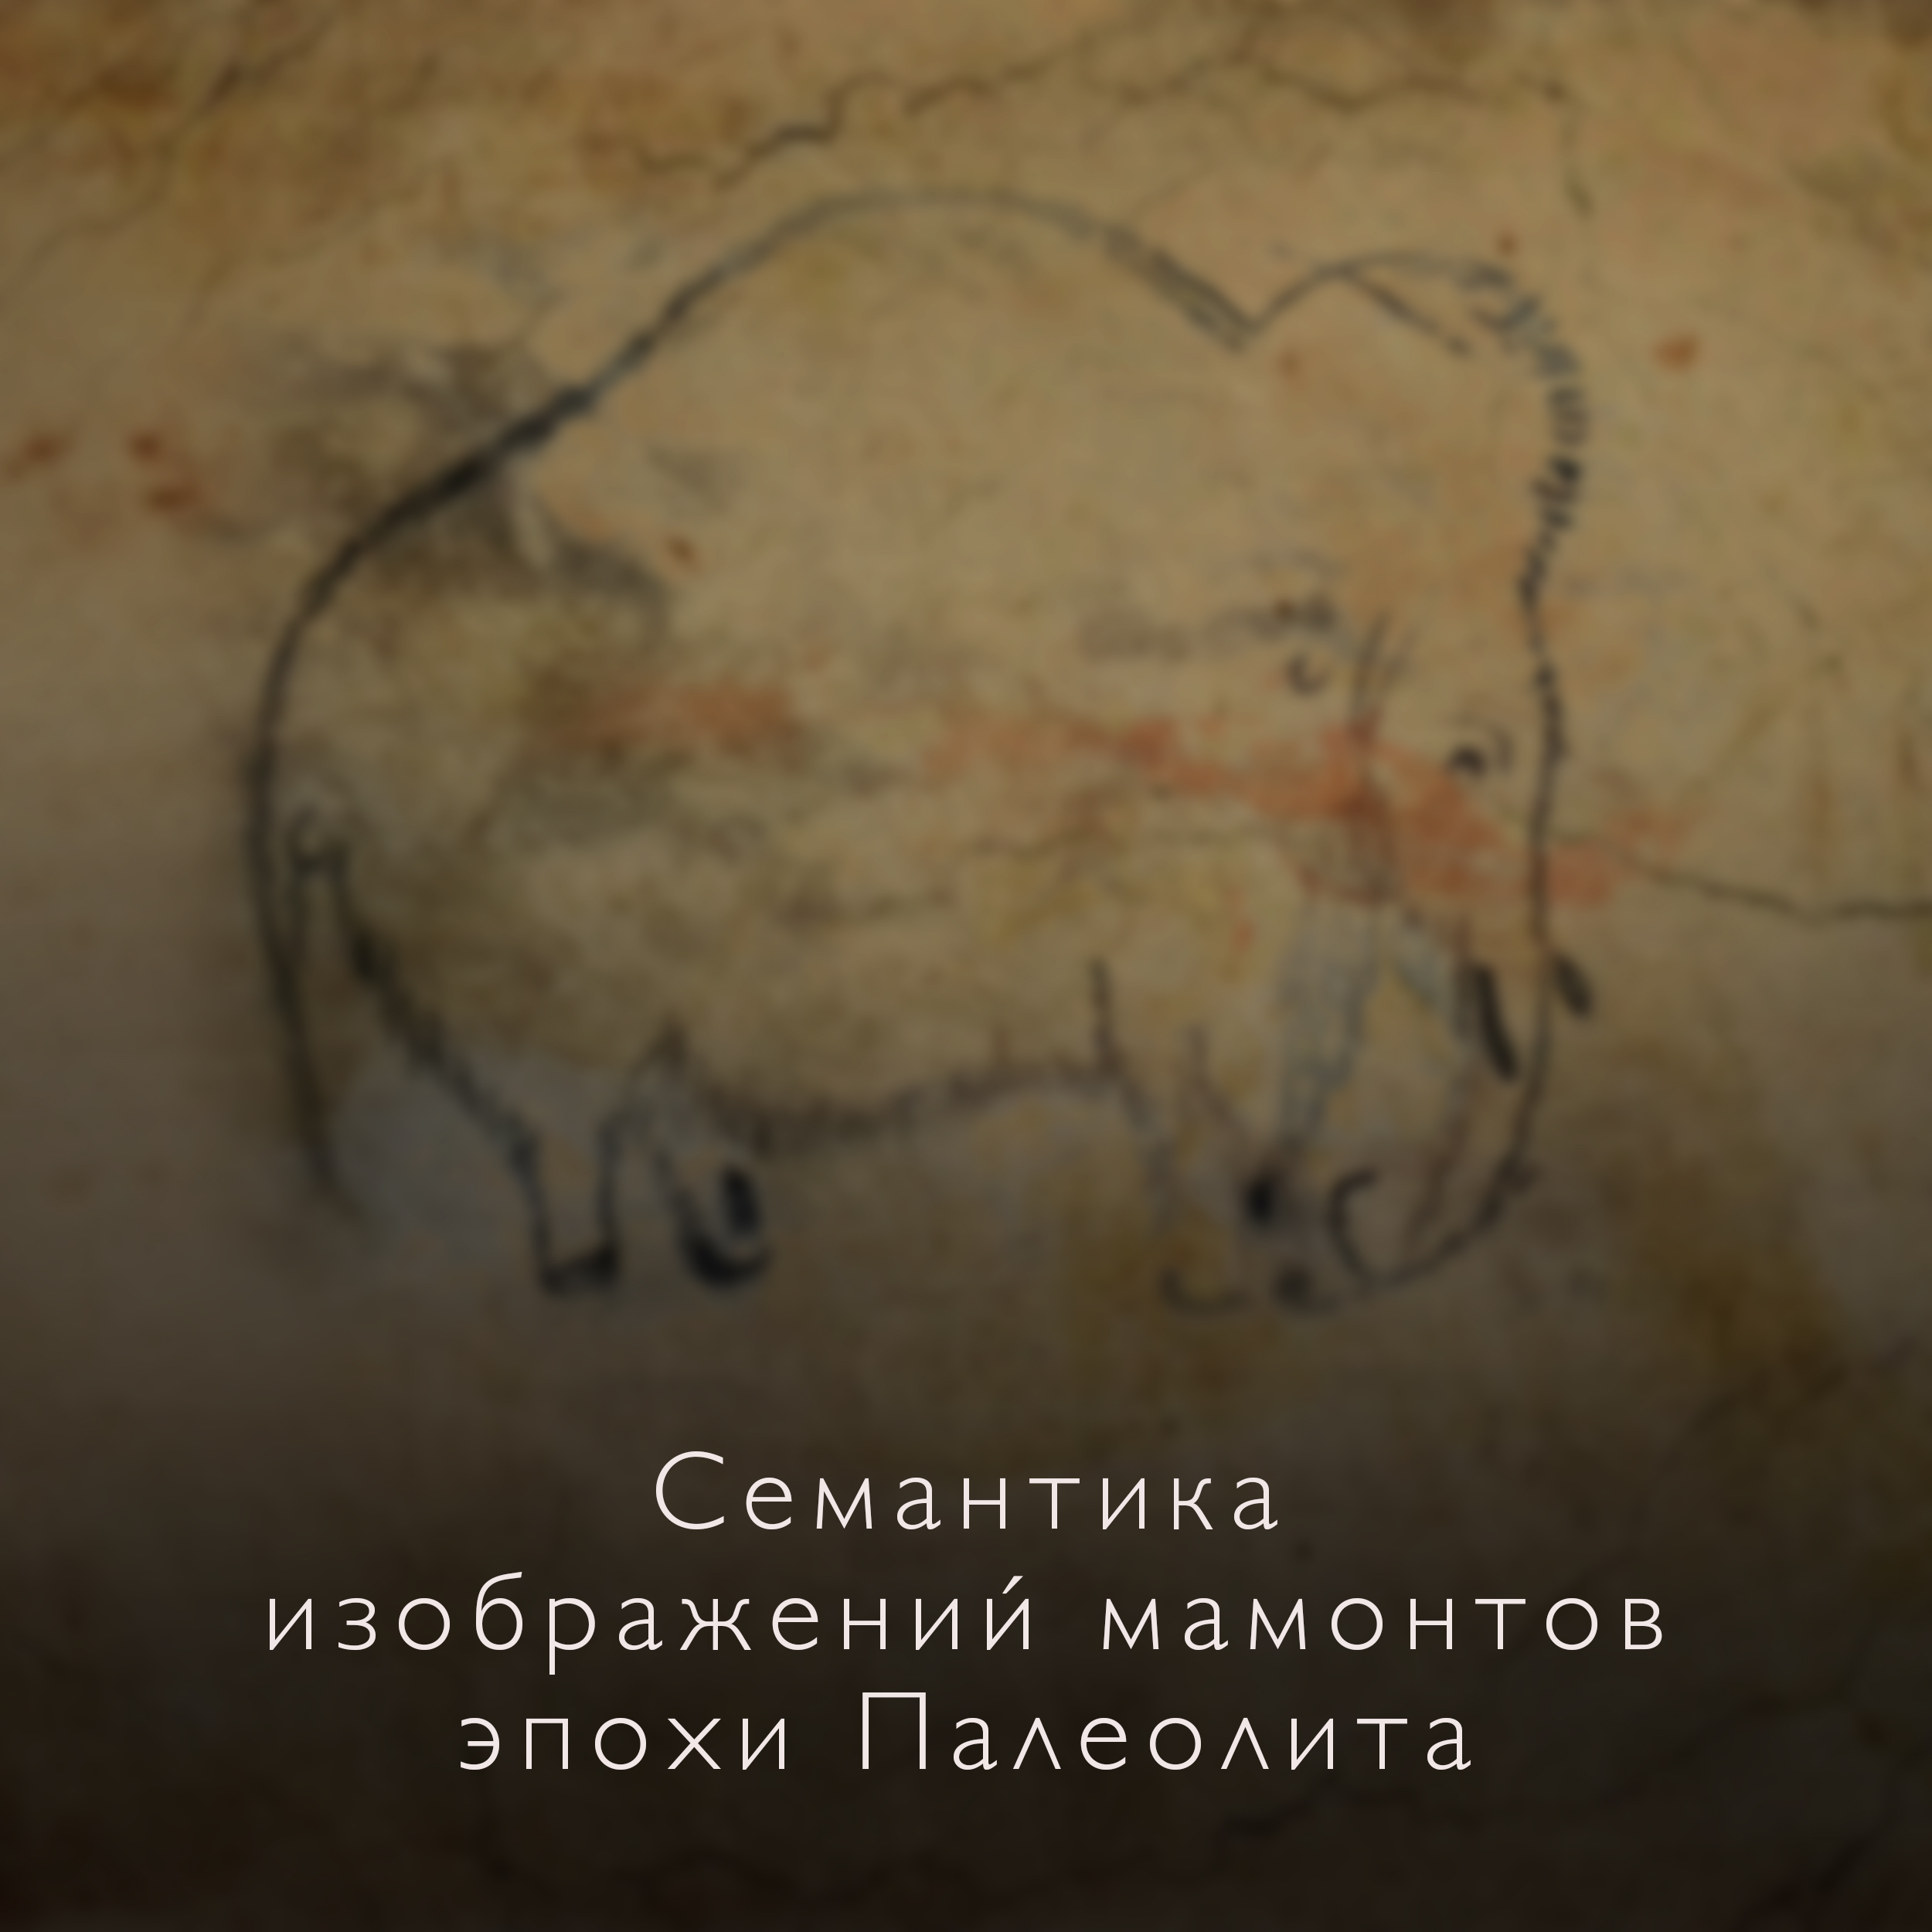 Наскальный рисунок мамонта